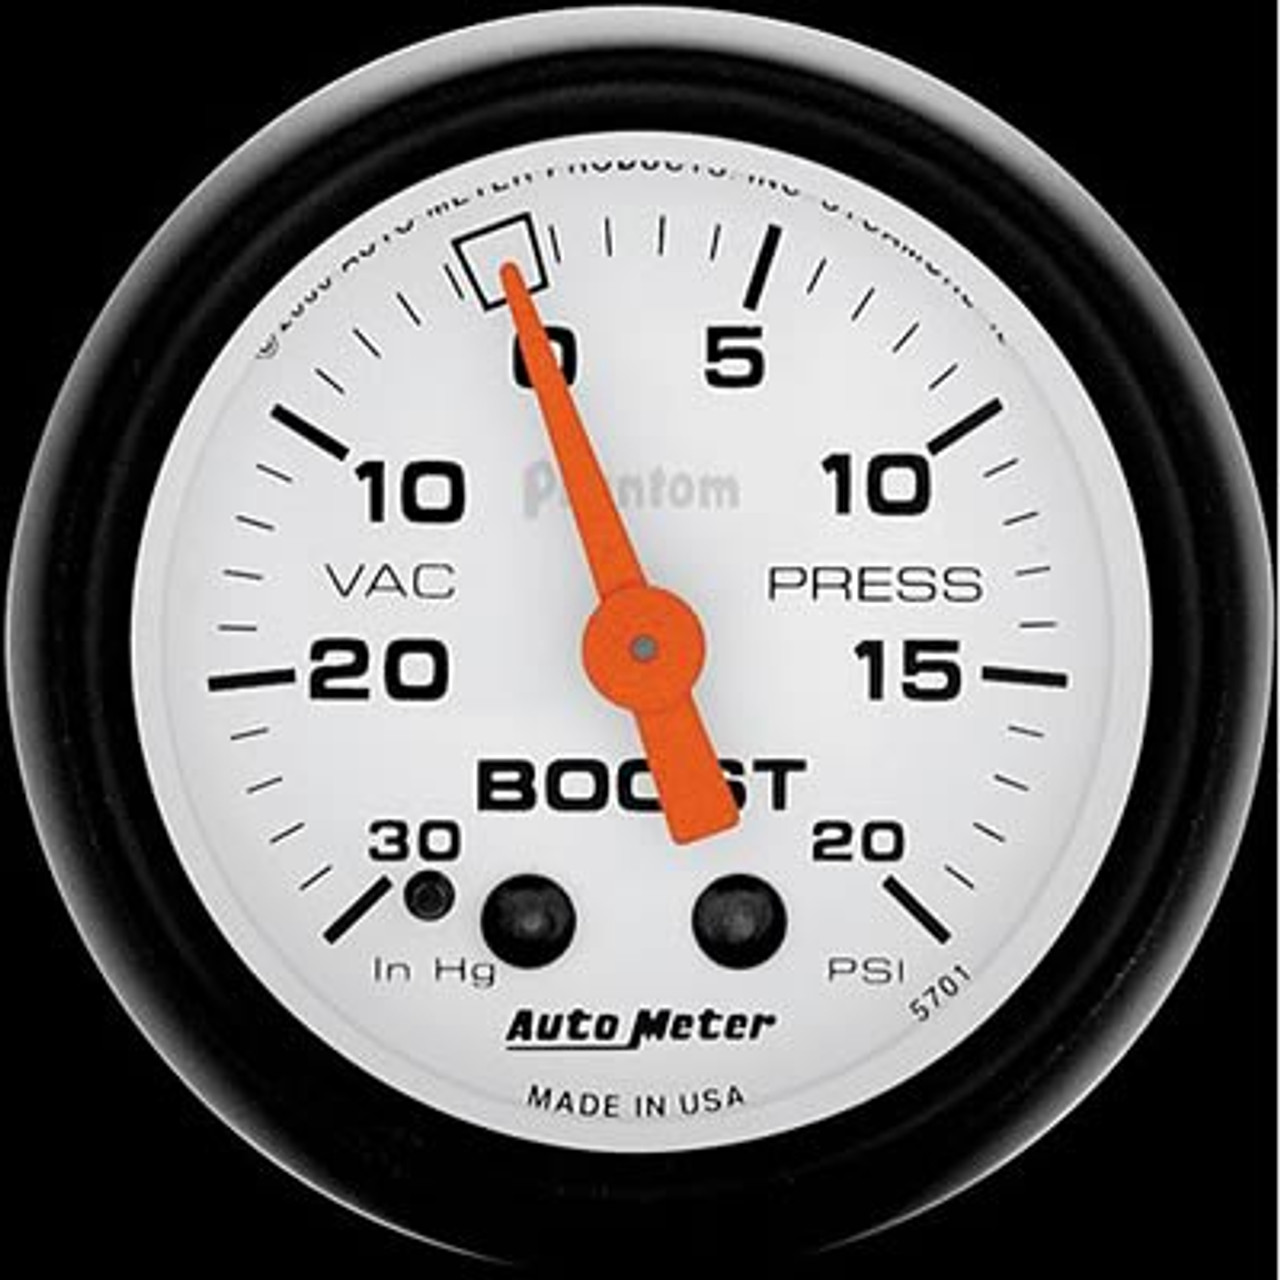 Auto Meter Phantom Boost Gauge 20 Psi Atm 5701